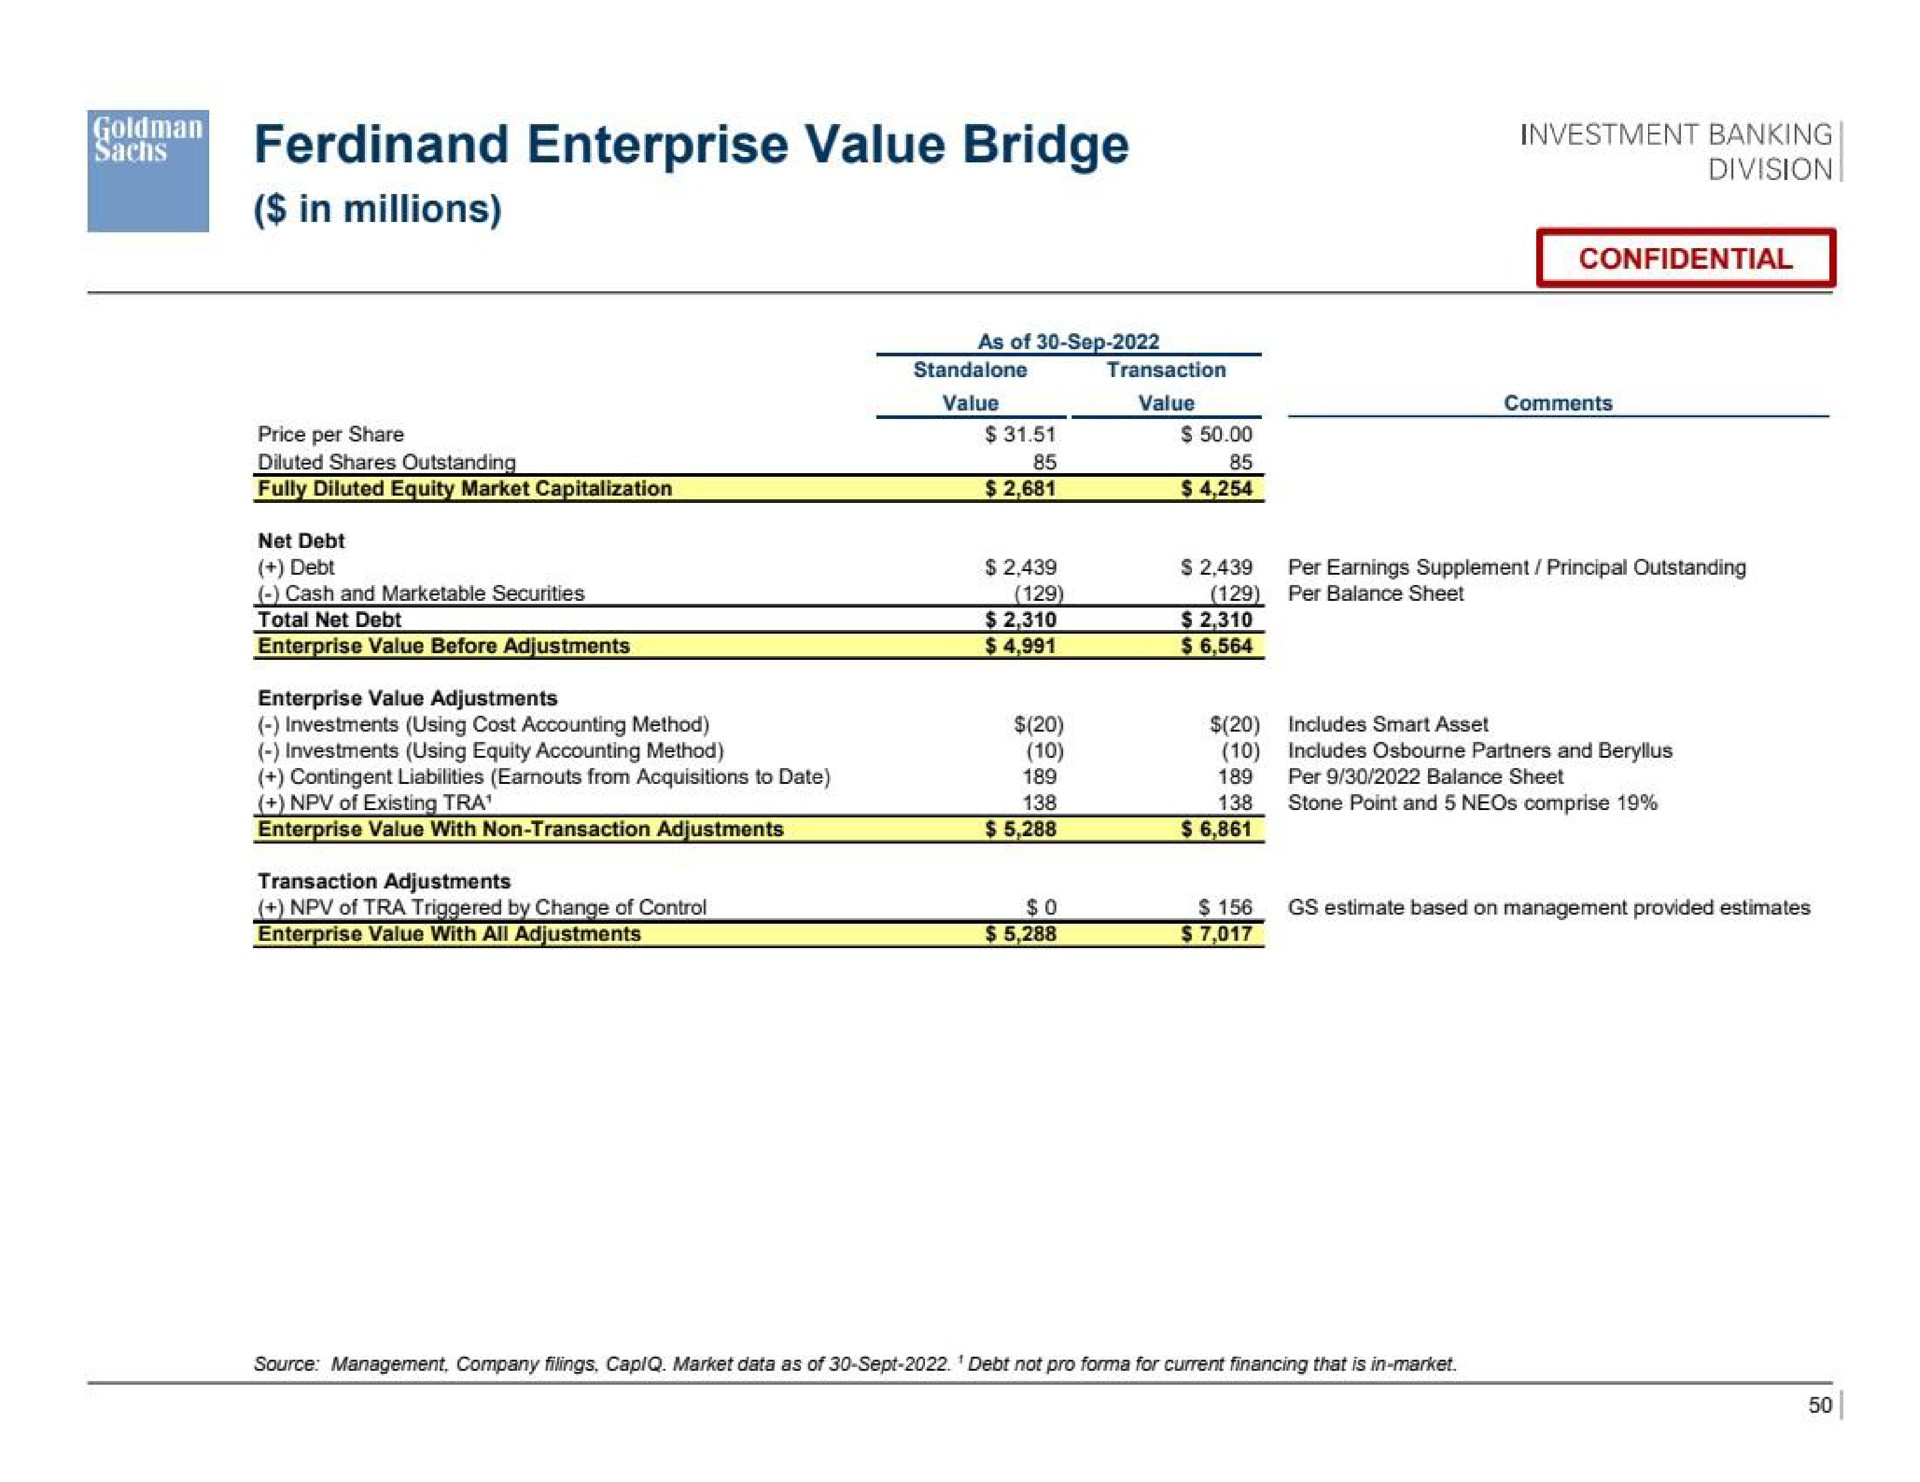 enterprise value bridge | Goldman Sachs